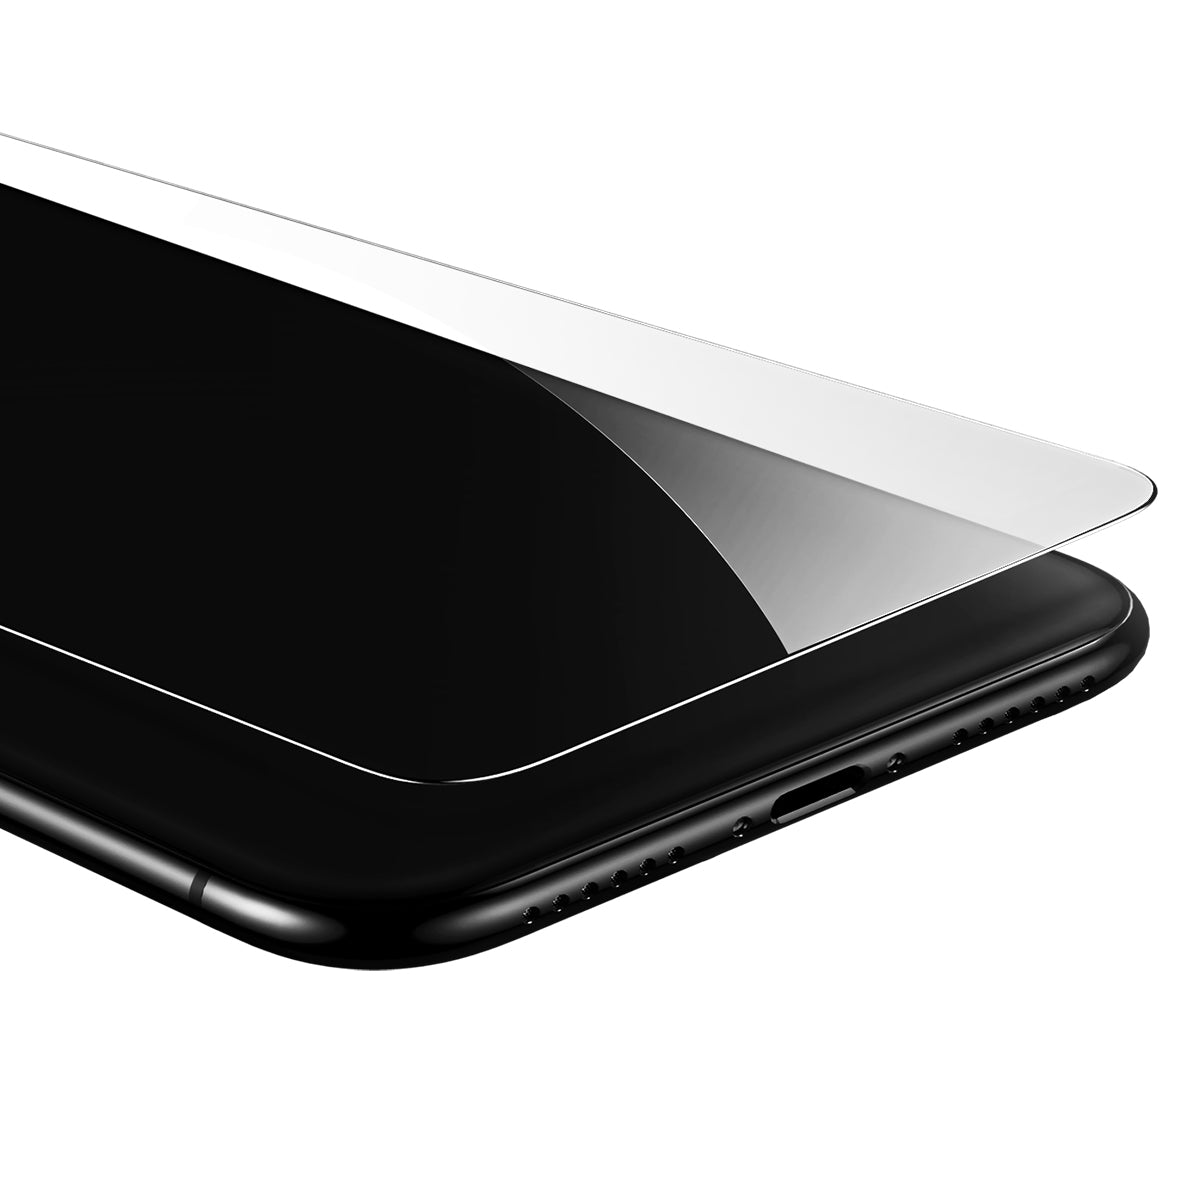 Protection d'écran 2.5D en verre trempé pour iPhone X, XR, XS et XS Max avec pose facile et sans bulle